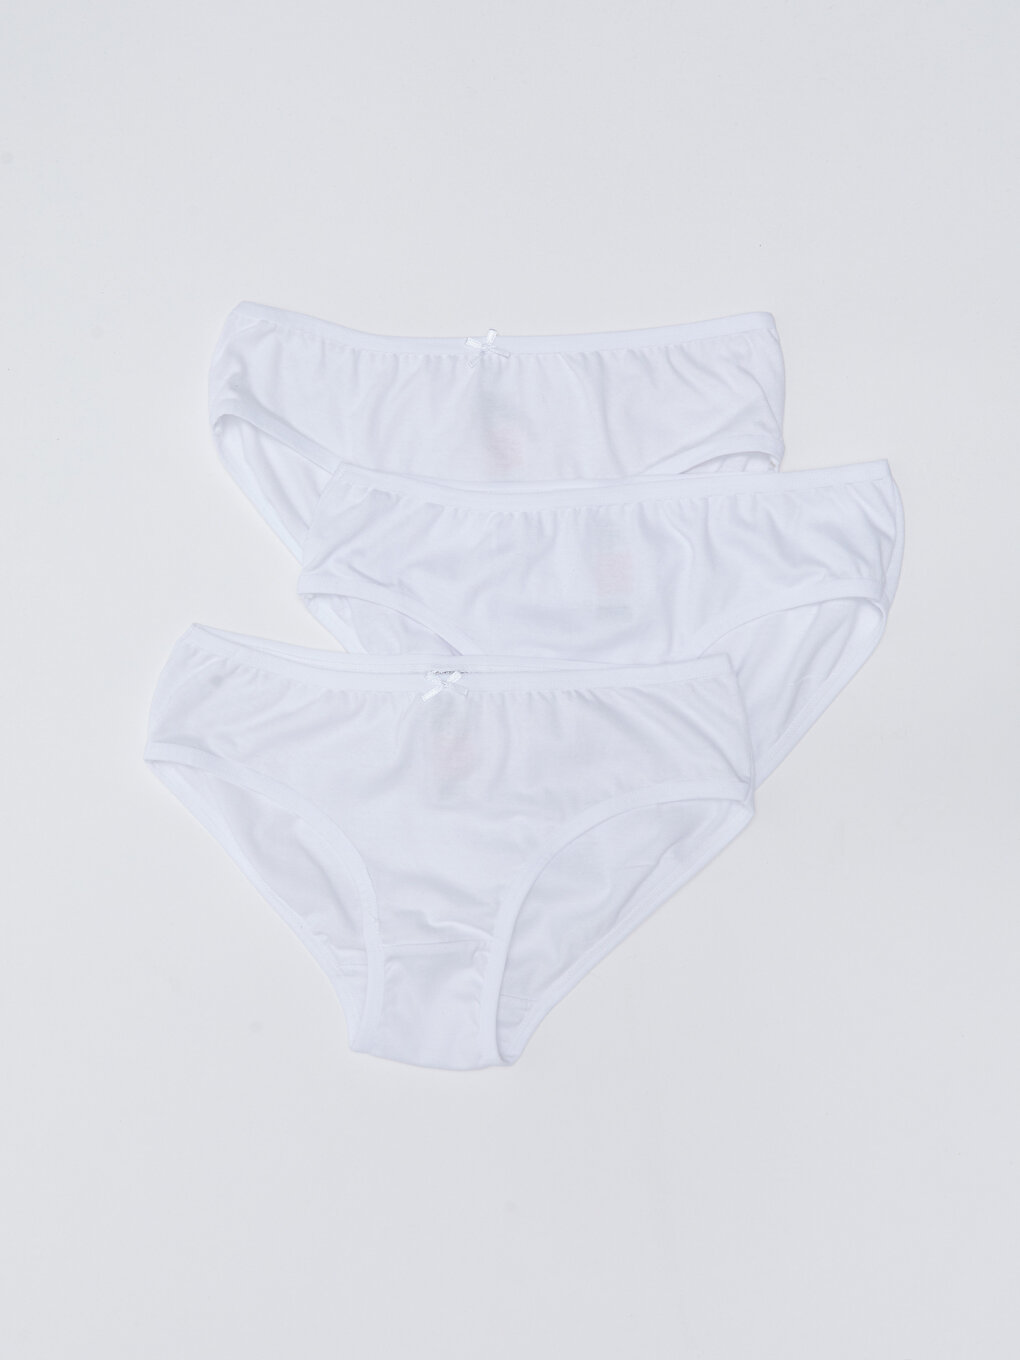 Buy SIVICE Girls White Panties Girls Briefs White Underwear Pack of 6(XXL)  at